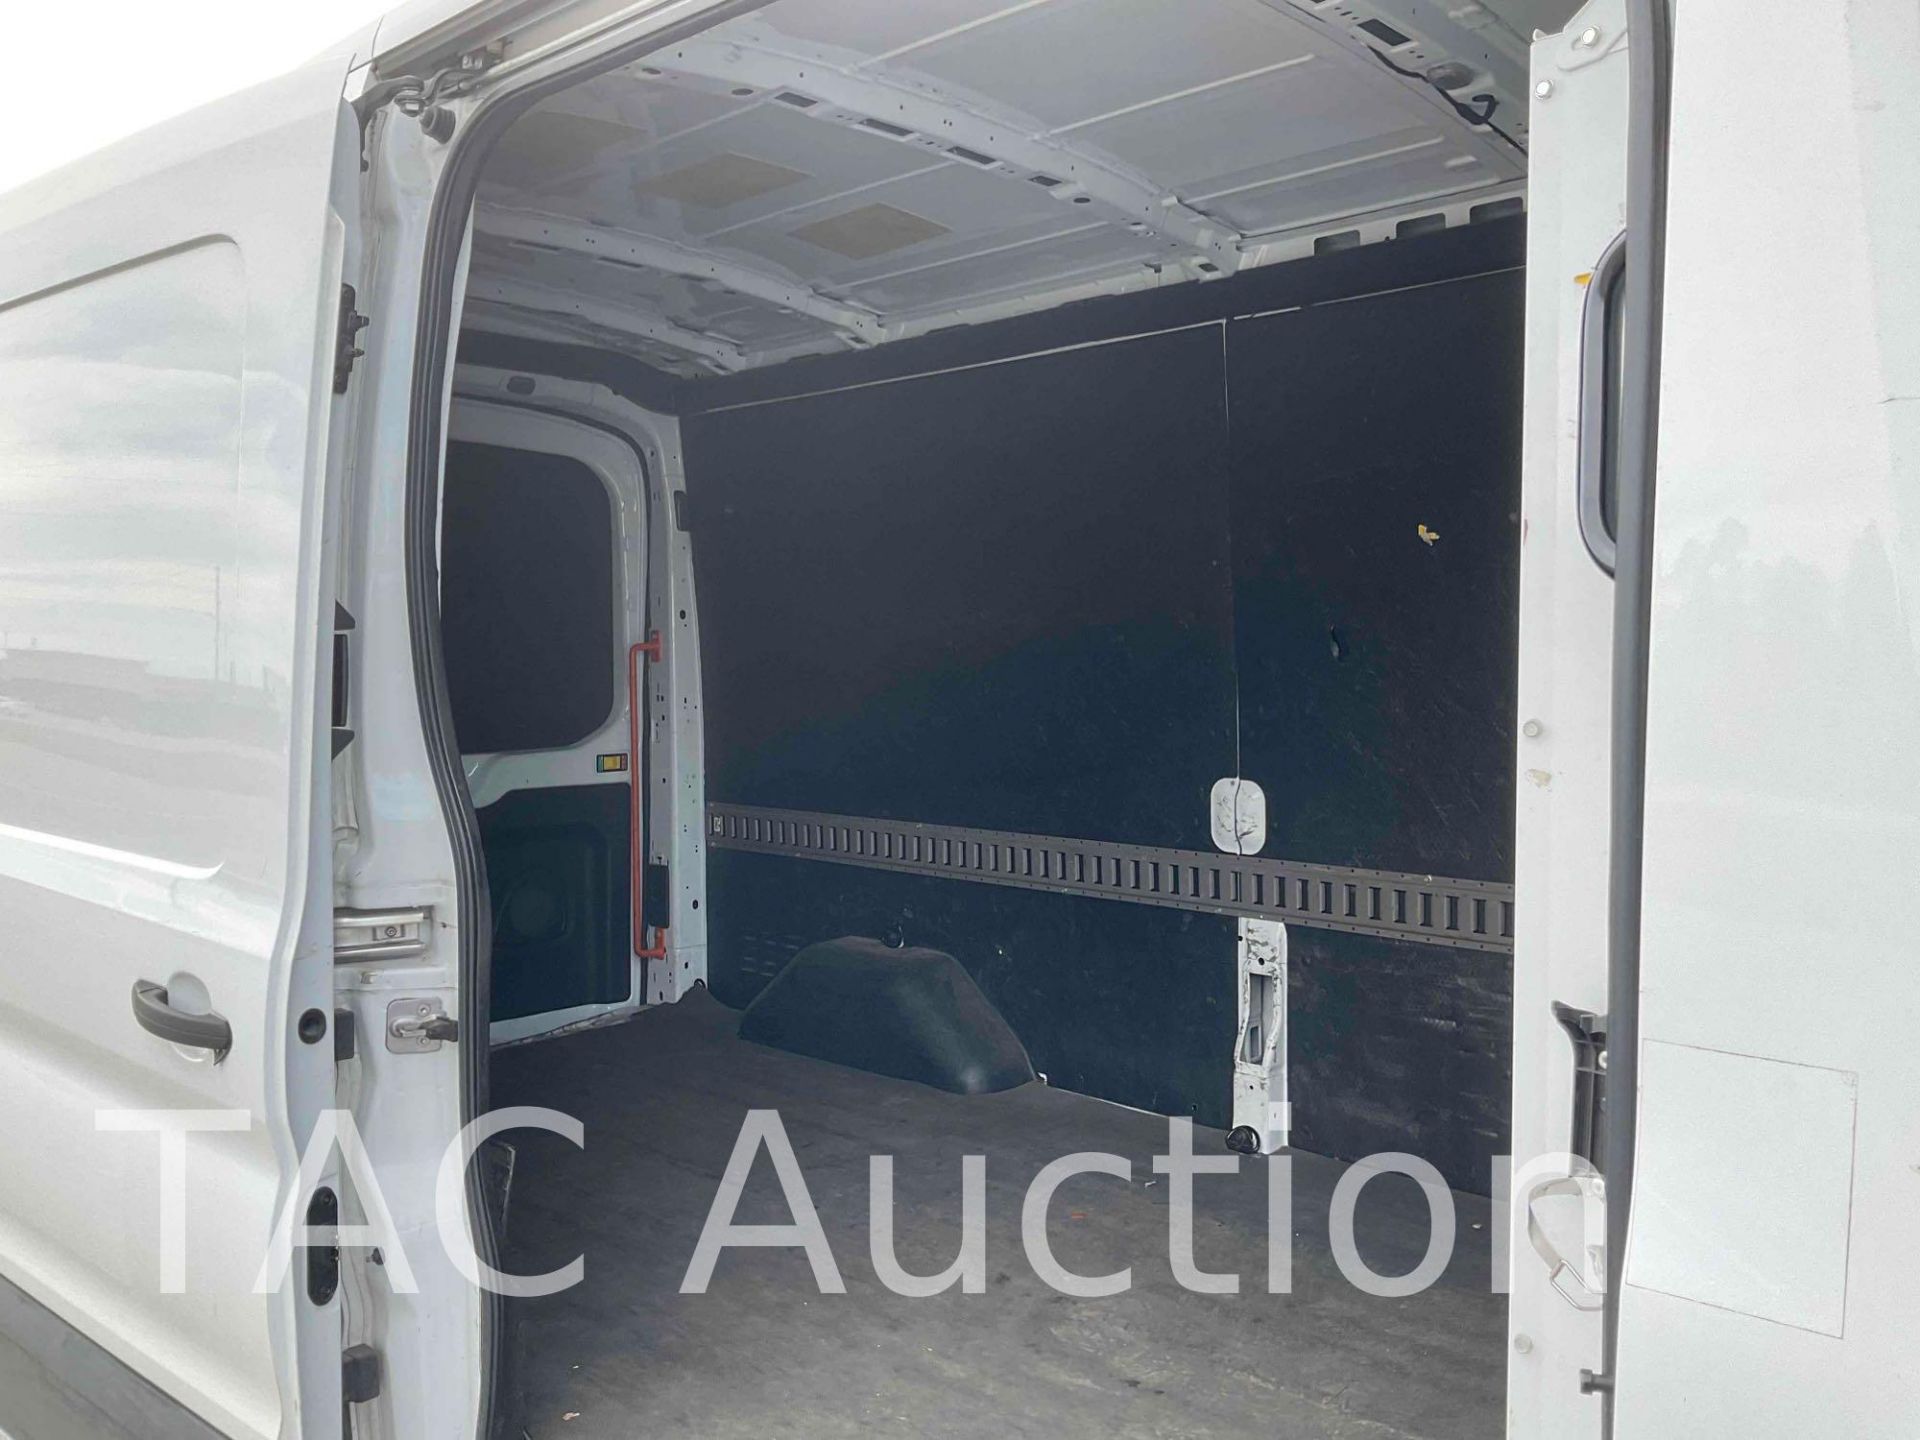 2019 Ford Transit 150 Cargo Van - Image 24 of 50